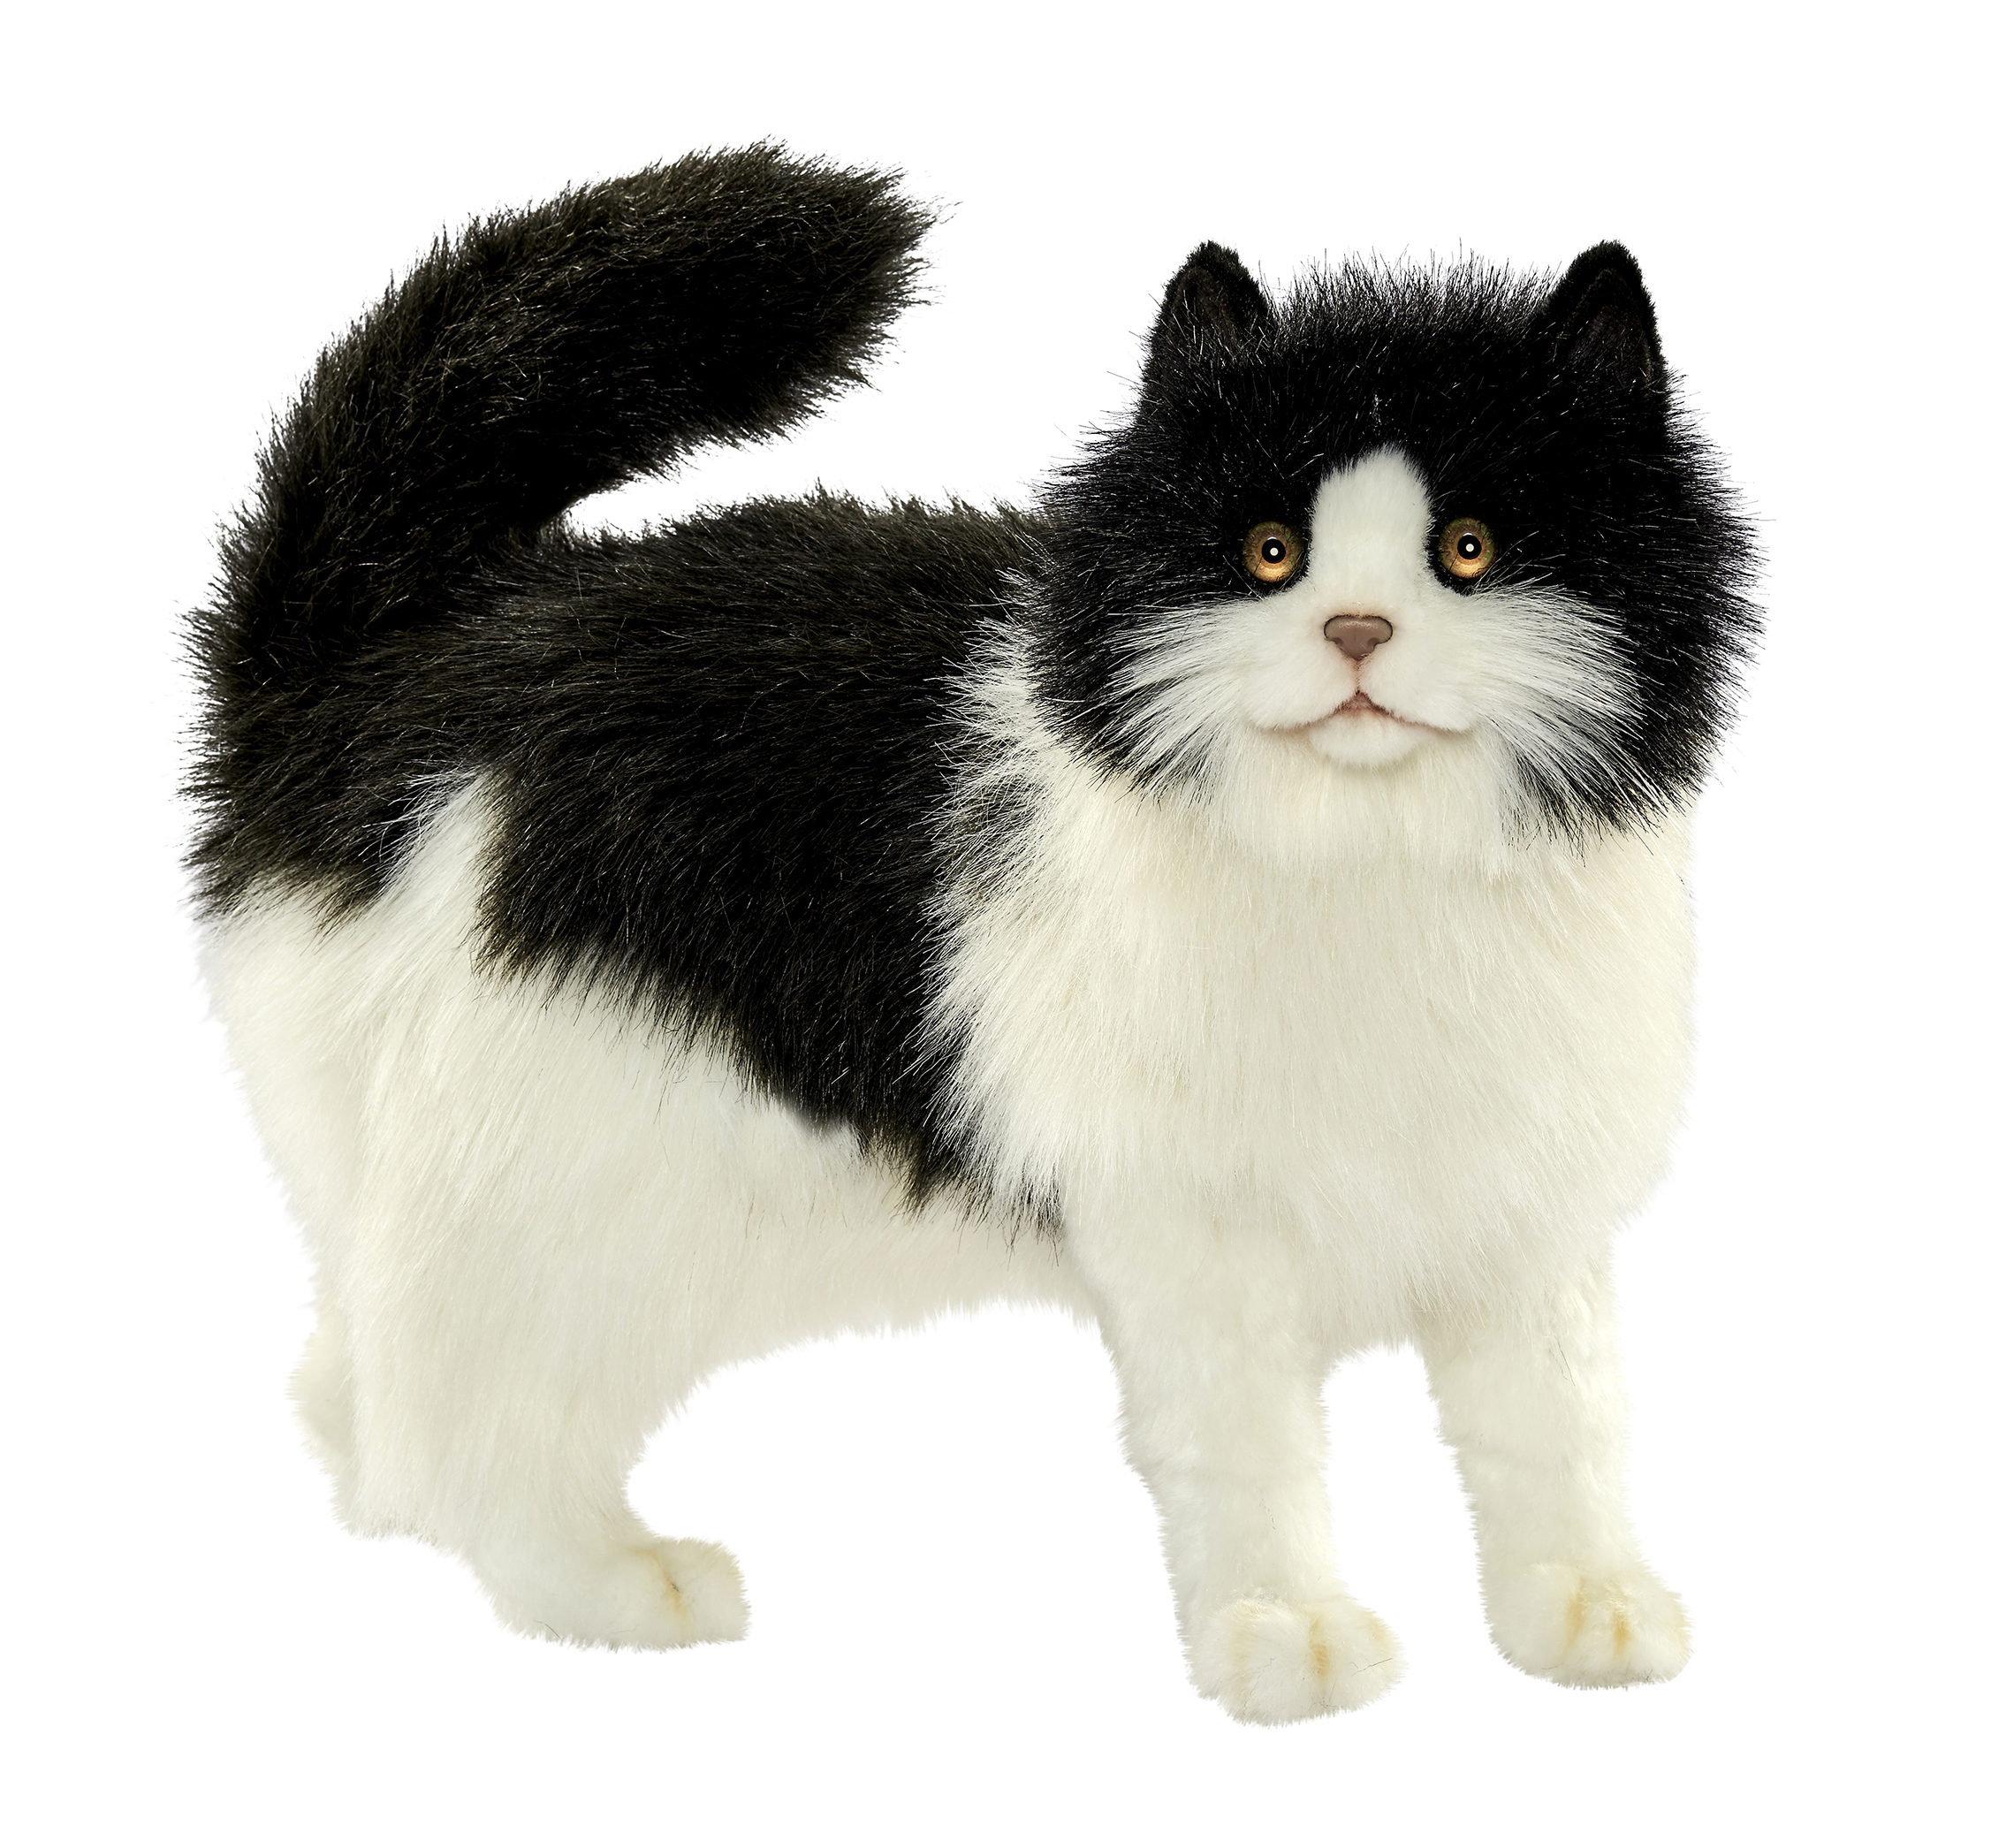 Купить игрушку кошечка. Реалистичная мягкая игрушка Hansa Creation кошка черно-белая, 40 см. Мягкая игрушка кот Ханса. Hansa Creation кошка. Игрушка кошка реалистичная Hansa черно белая.